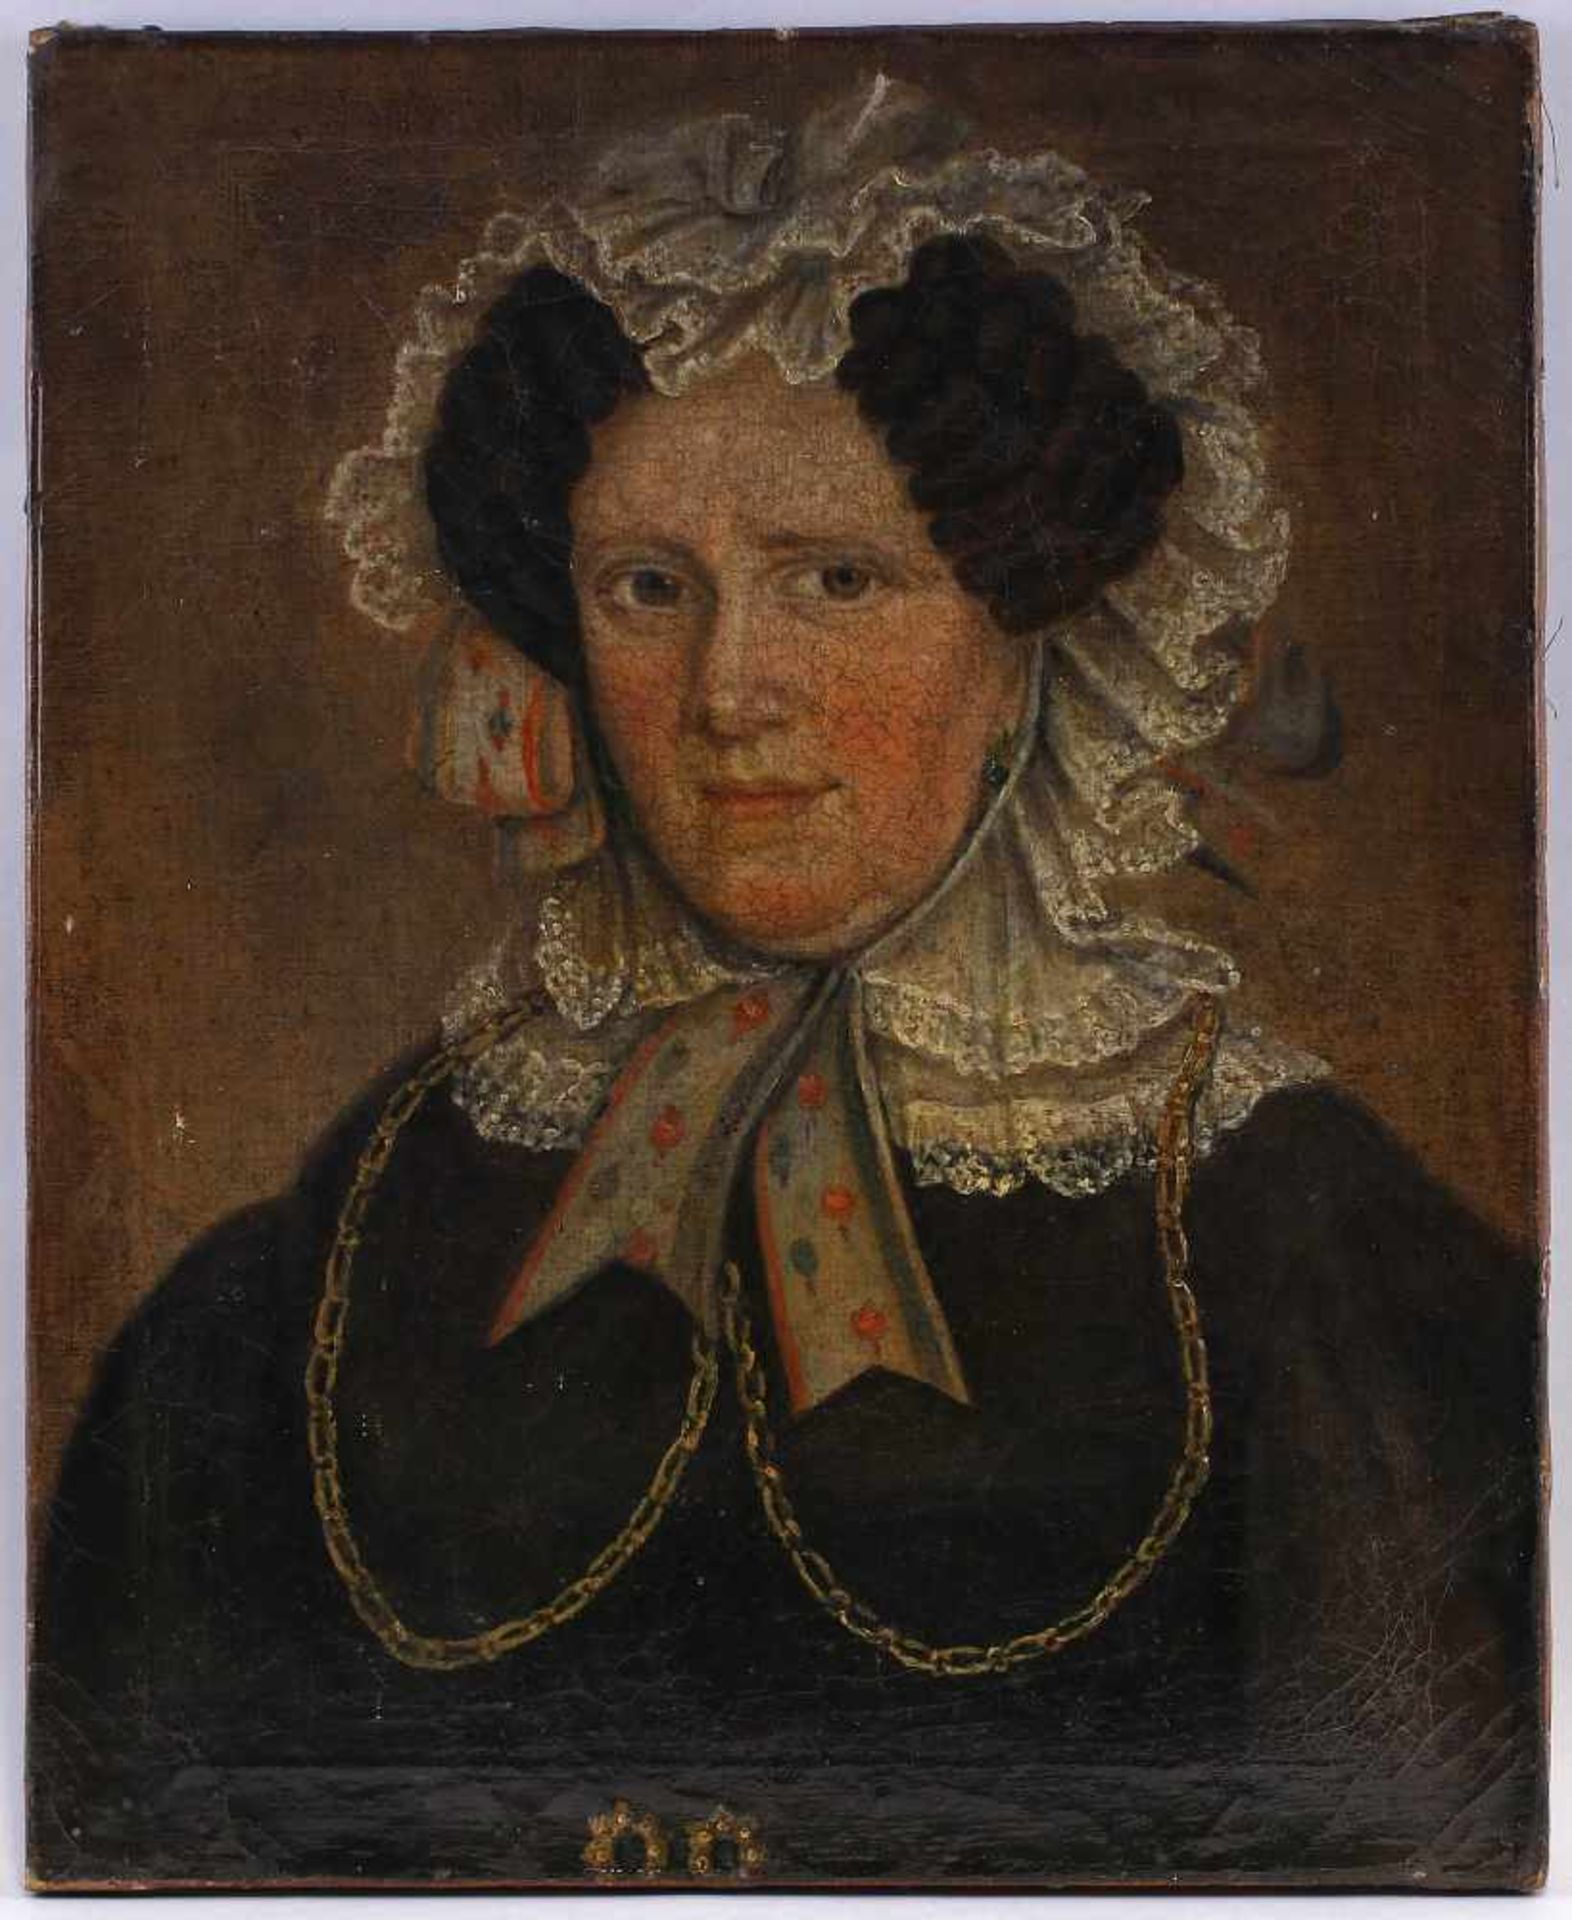 Leis, Porträt Ottilia Casparunsigniert, verso handschriftlich teils unleserlich bez.: "Frau